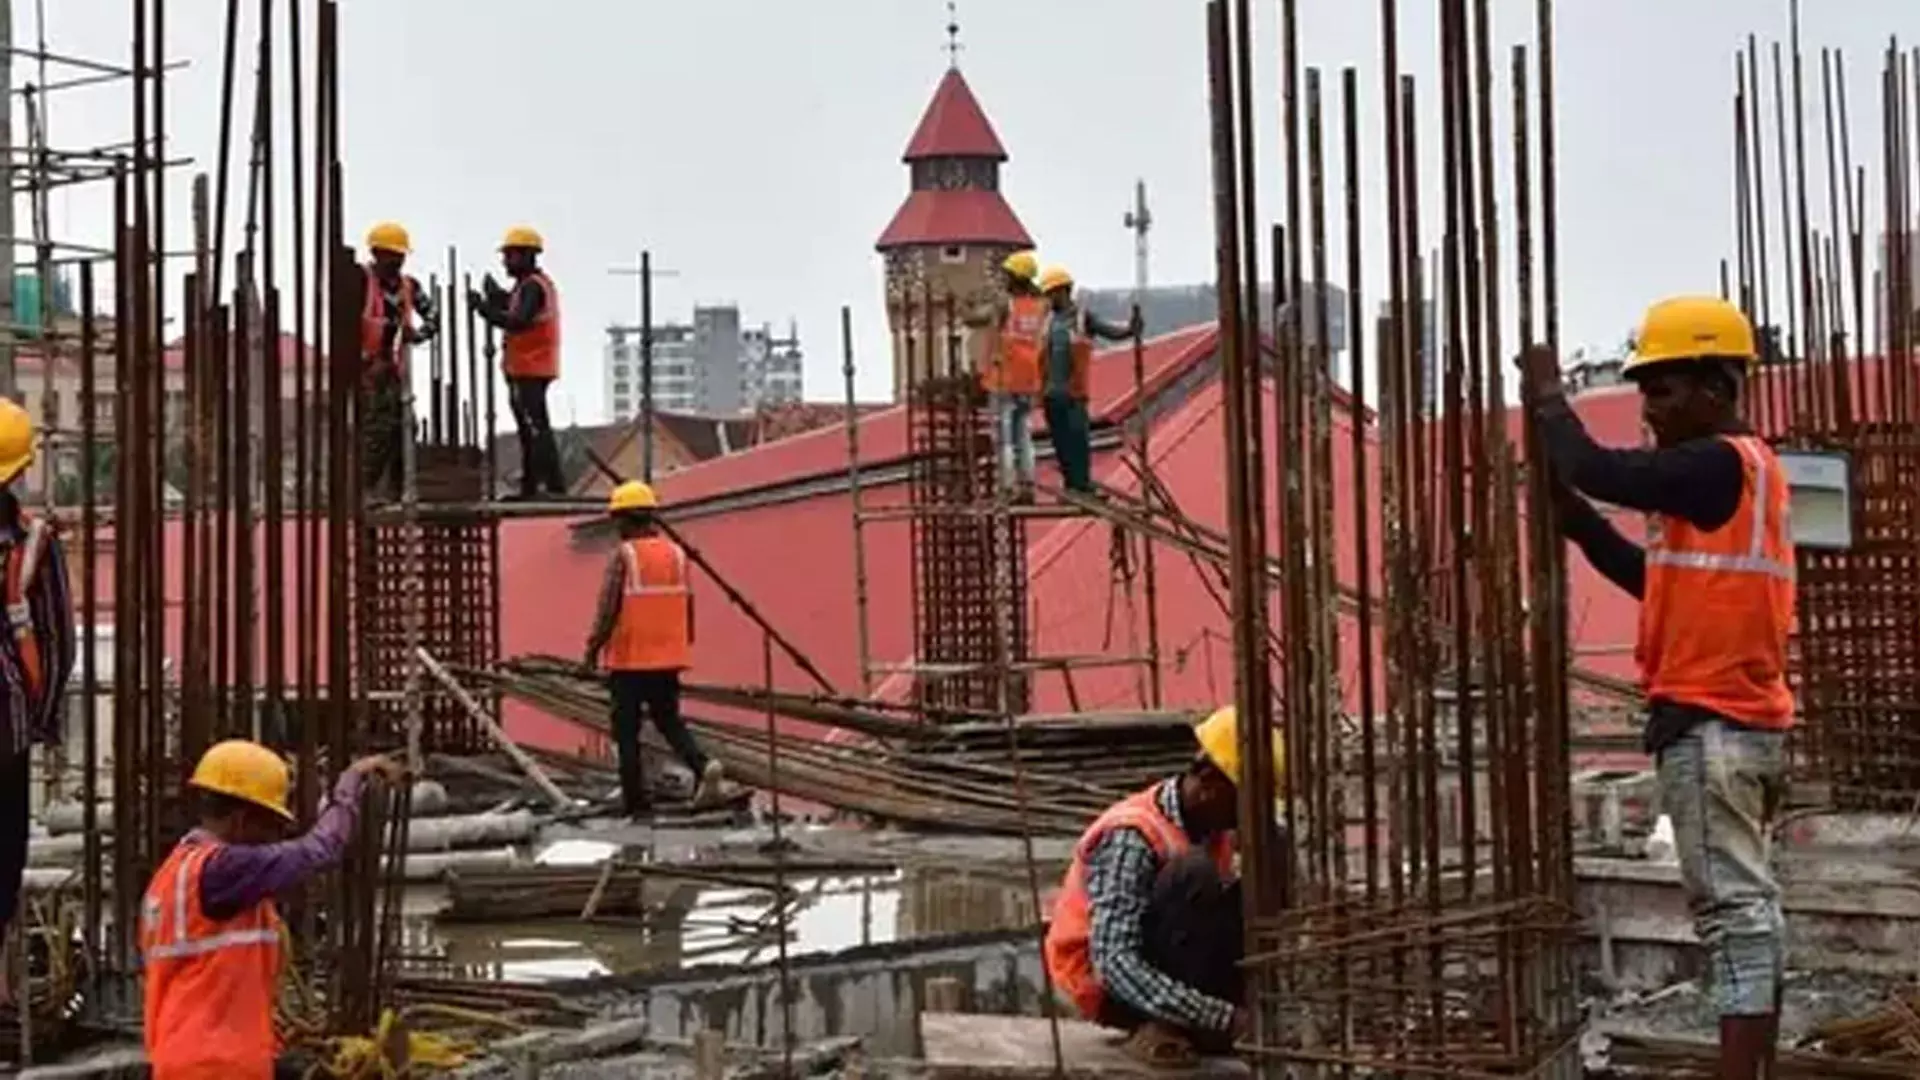 MUMBAI: महारेरा ने 1,750 बंद पड़ी आवासीय परियोजनाओं का पंजीकरण निलंबित किया